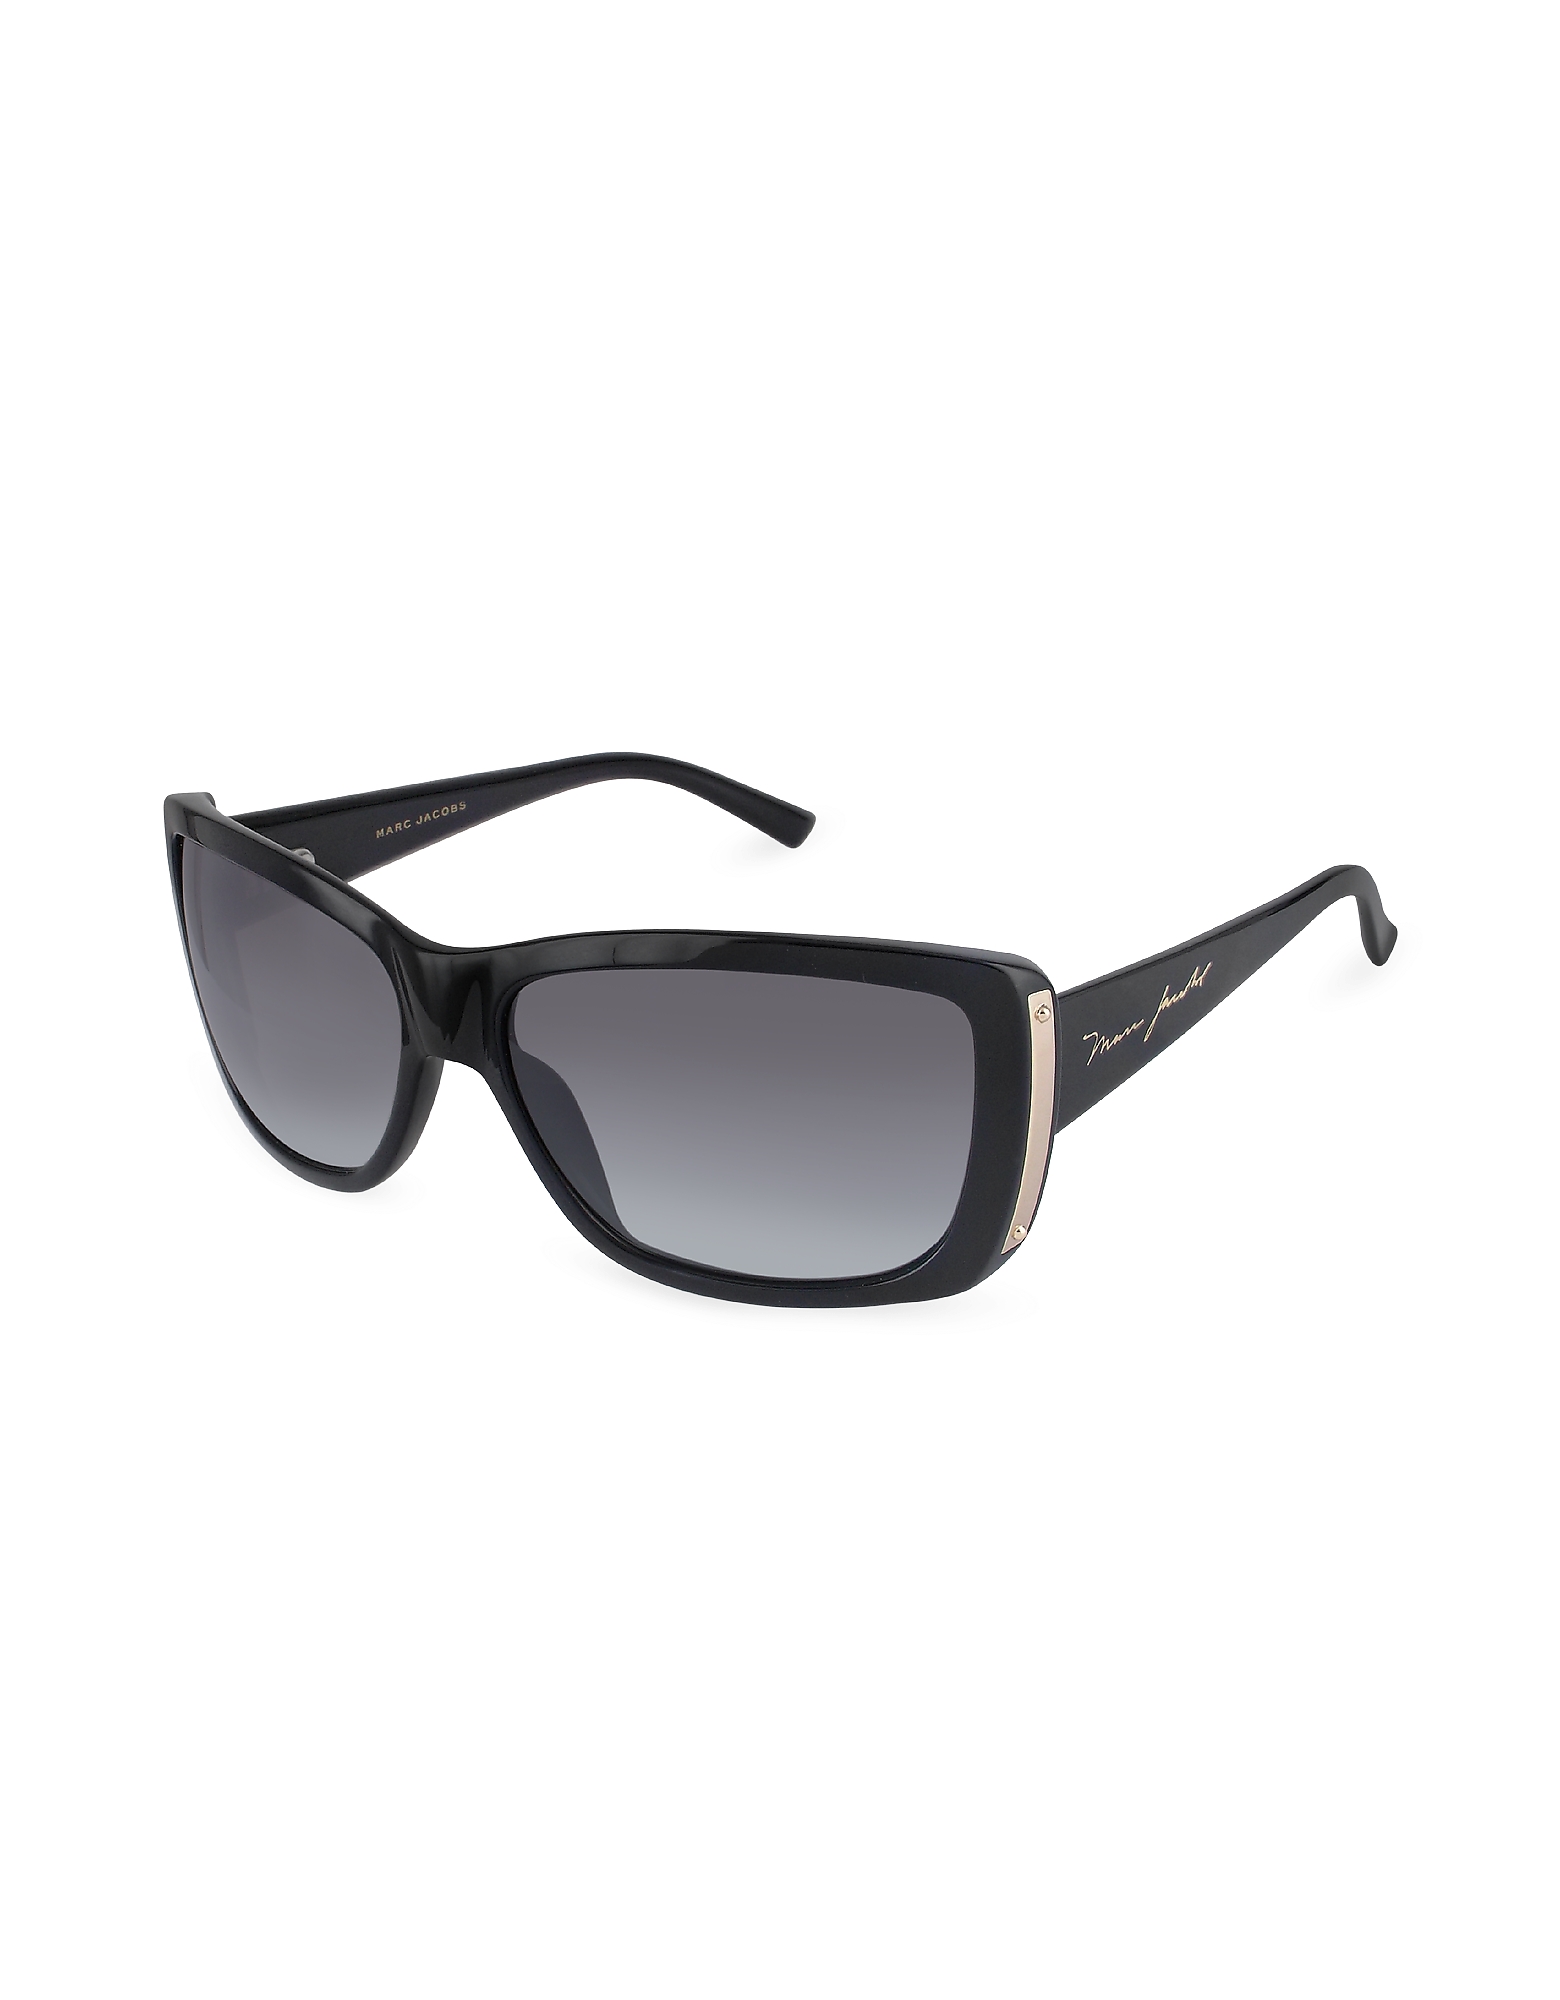 

Plastic Rectangular Signature Temple Sunglasses, Black/gradient grey